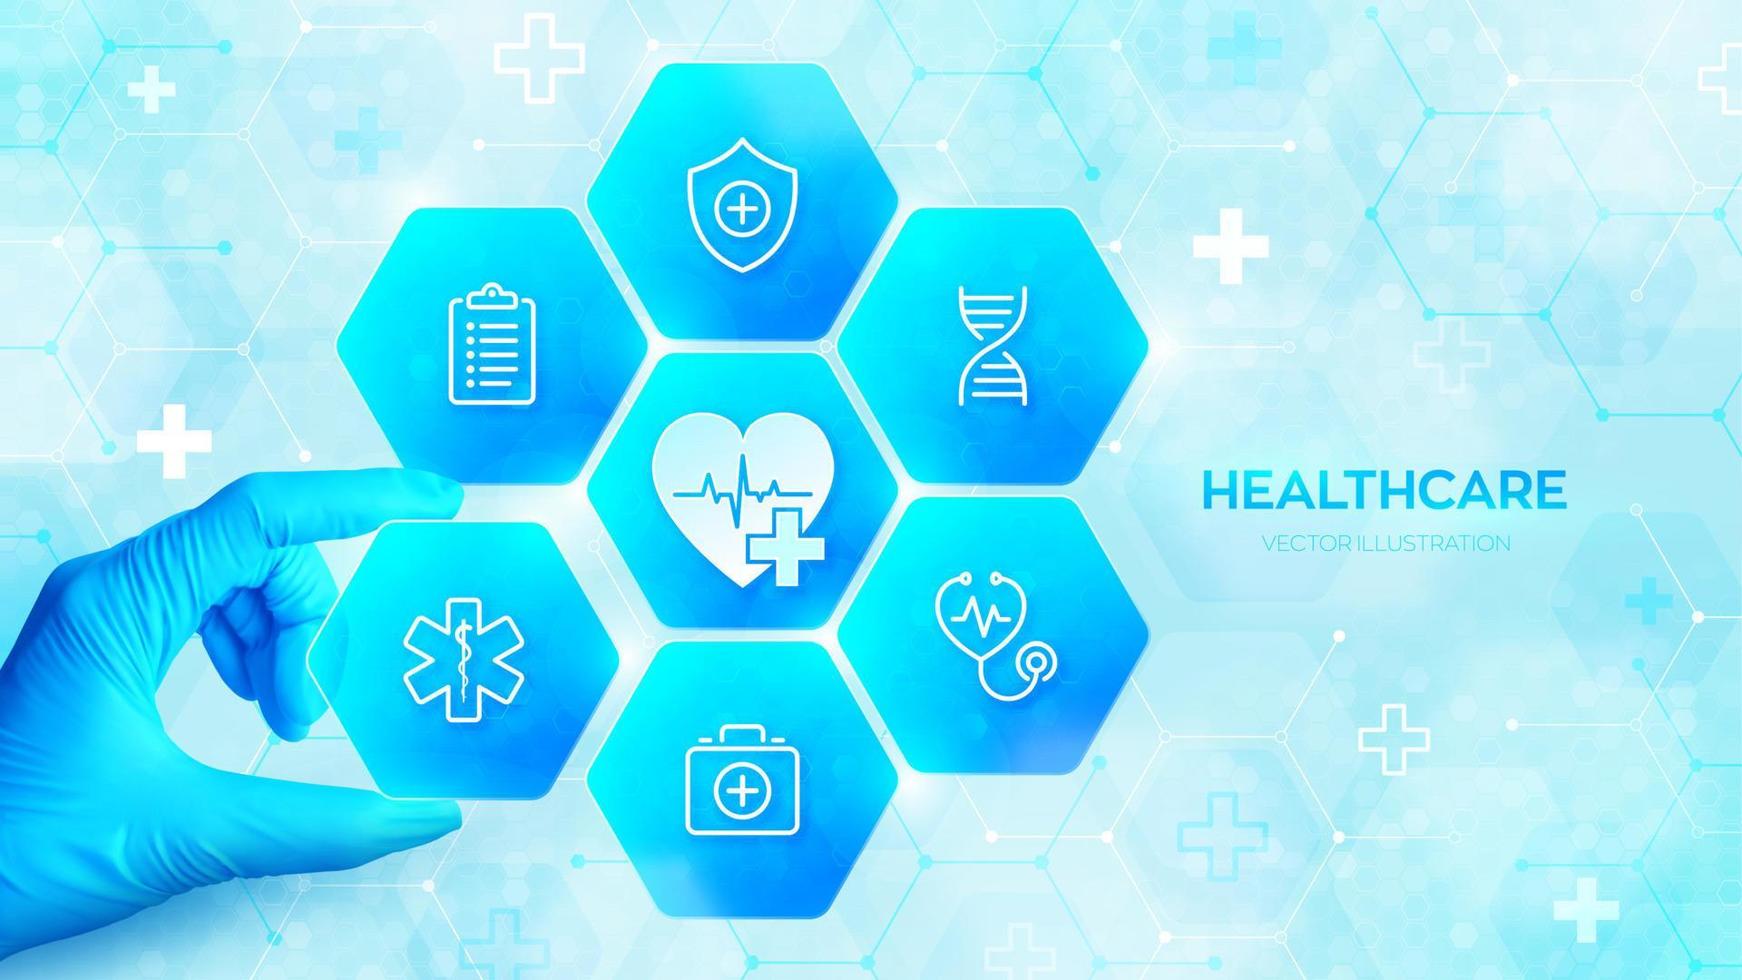 Gesundheitspflege. Medizin Gesundheit Pflege Technologie Konzept. Gesundheit Versicherung. Hand im Blau Handschuh setzt ein Element in ein Komposition mit medizinisch Symbole visualisieren medizinisch Dienstleistungen. Vektor Illustration.